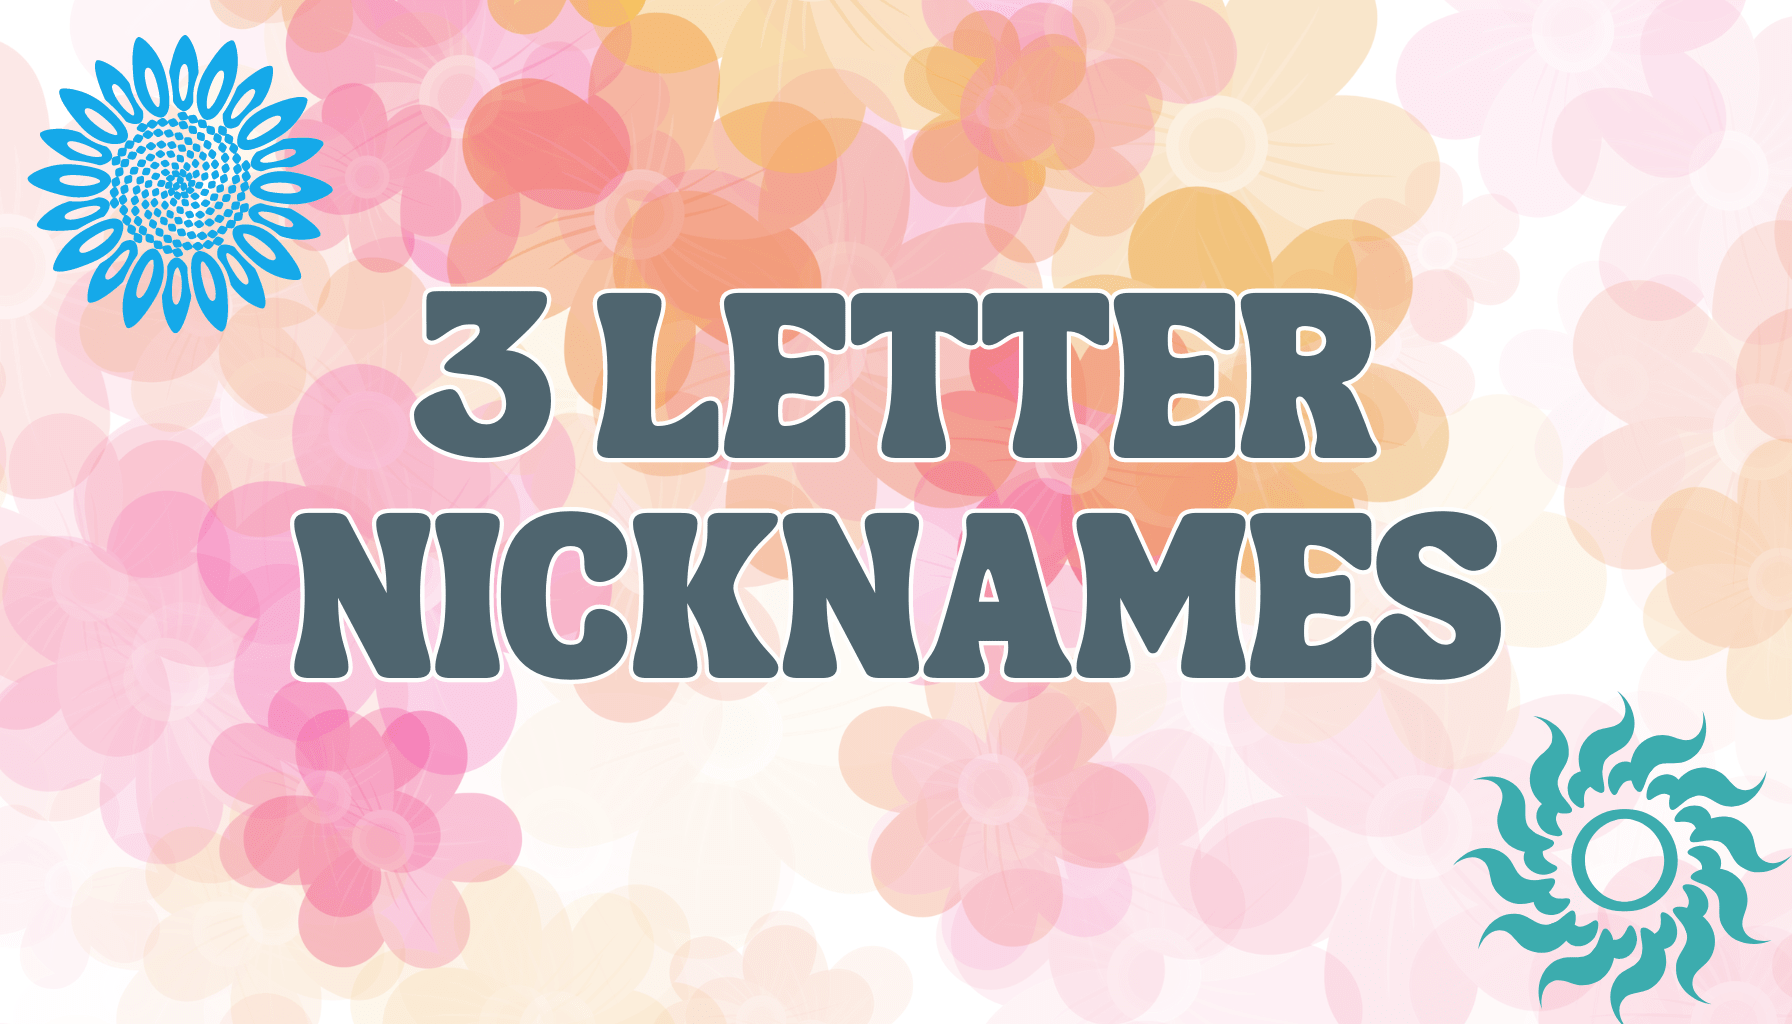 3 letter nicknames